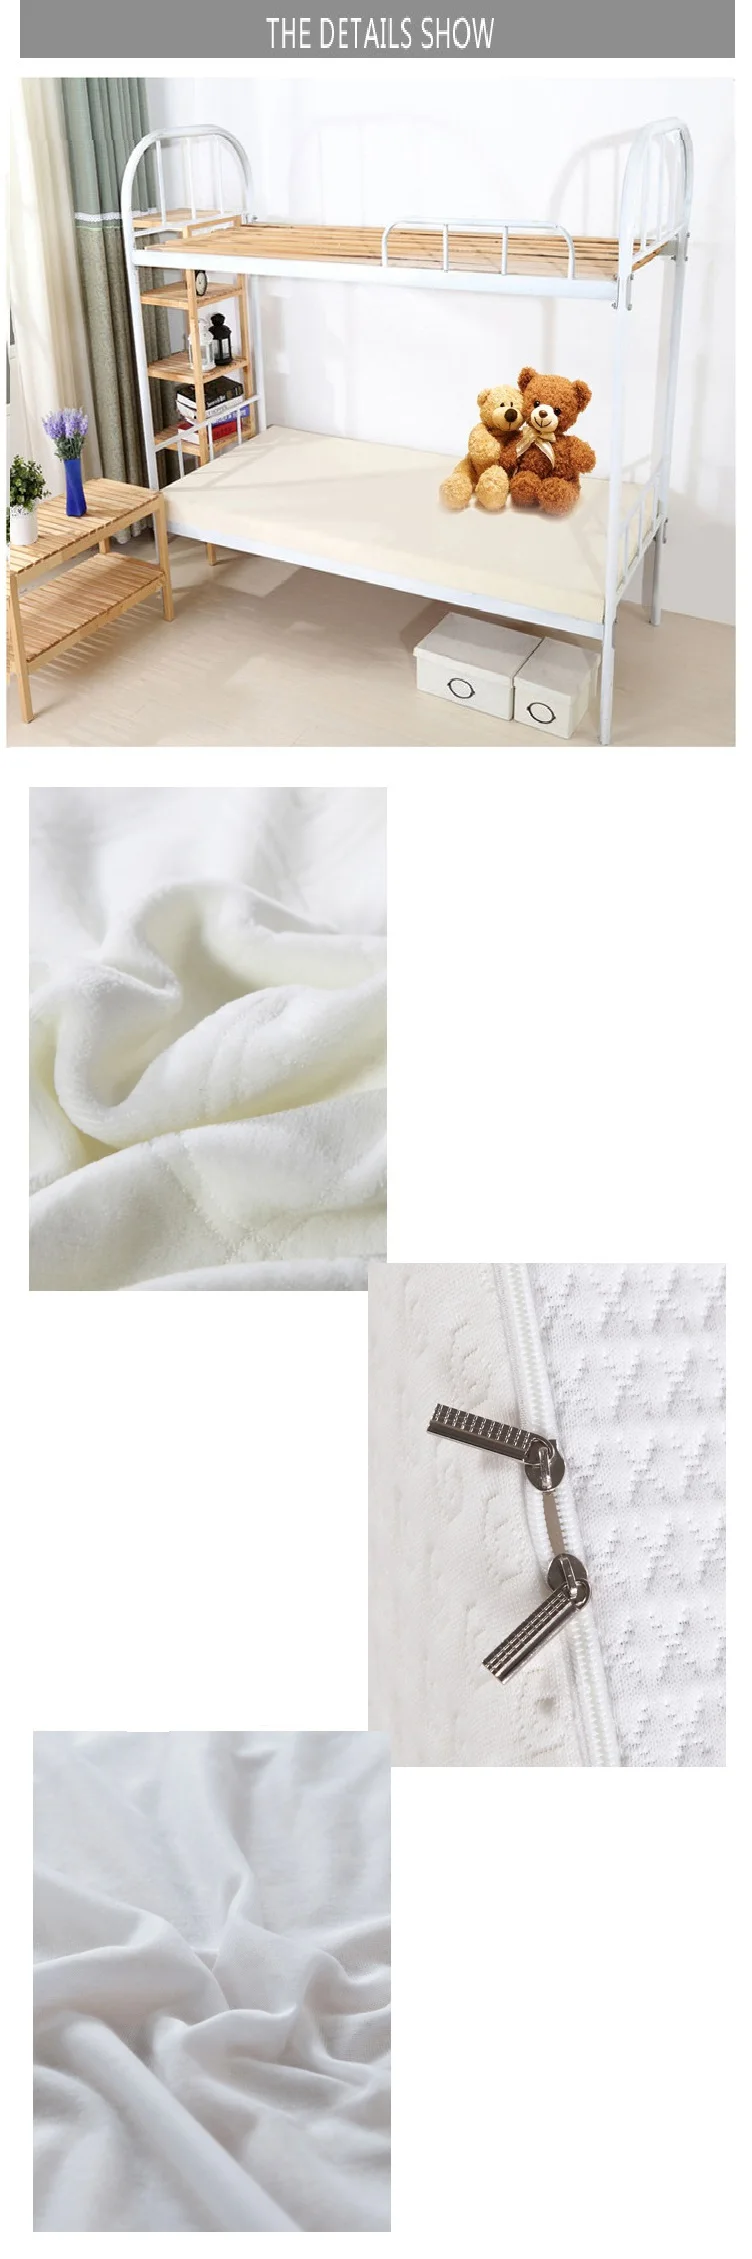 Односпальная кровать Стиль Высокая Устойчивость пены памяти матрас студенческого общежития белый Высокое качество толстый теплый удобный матрас